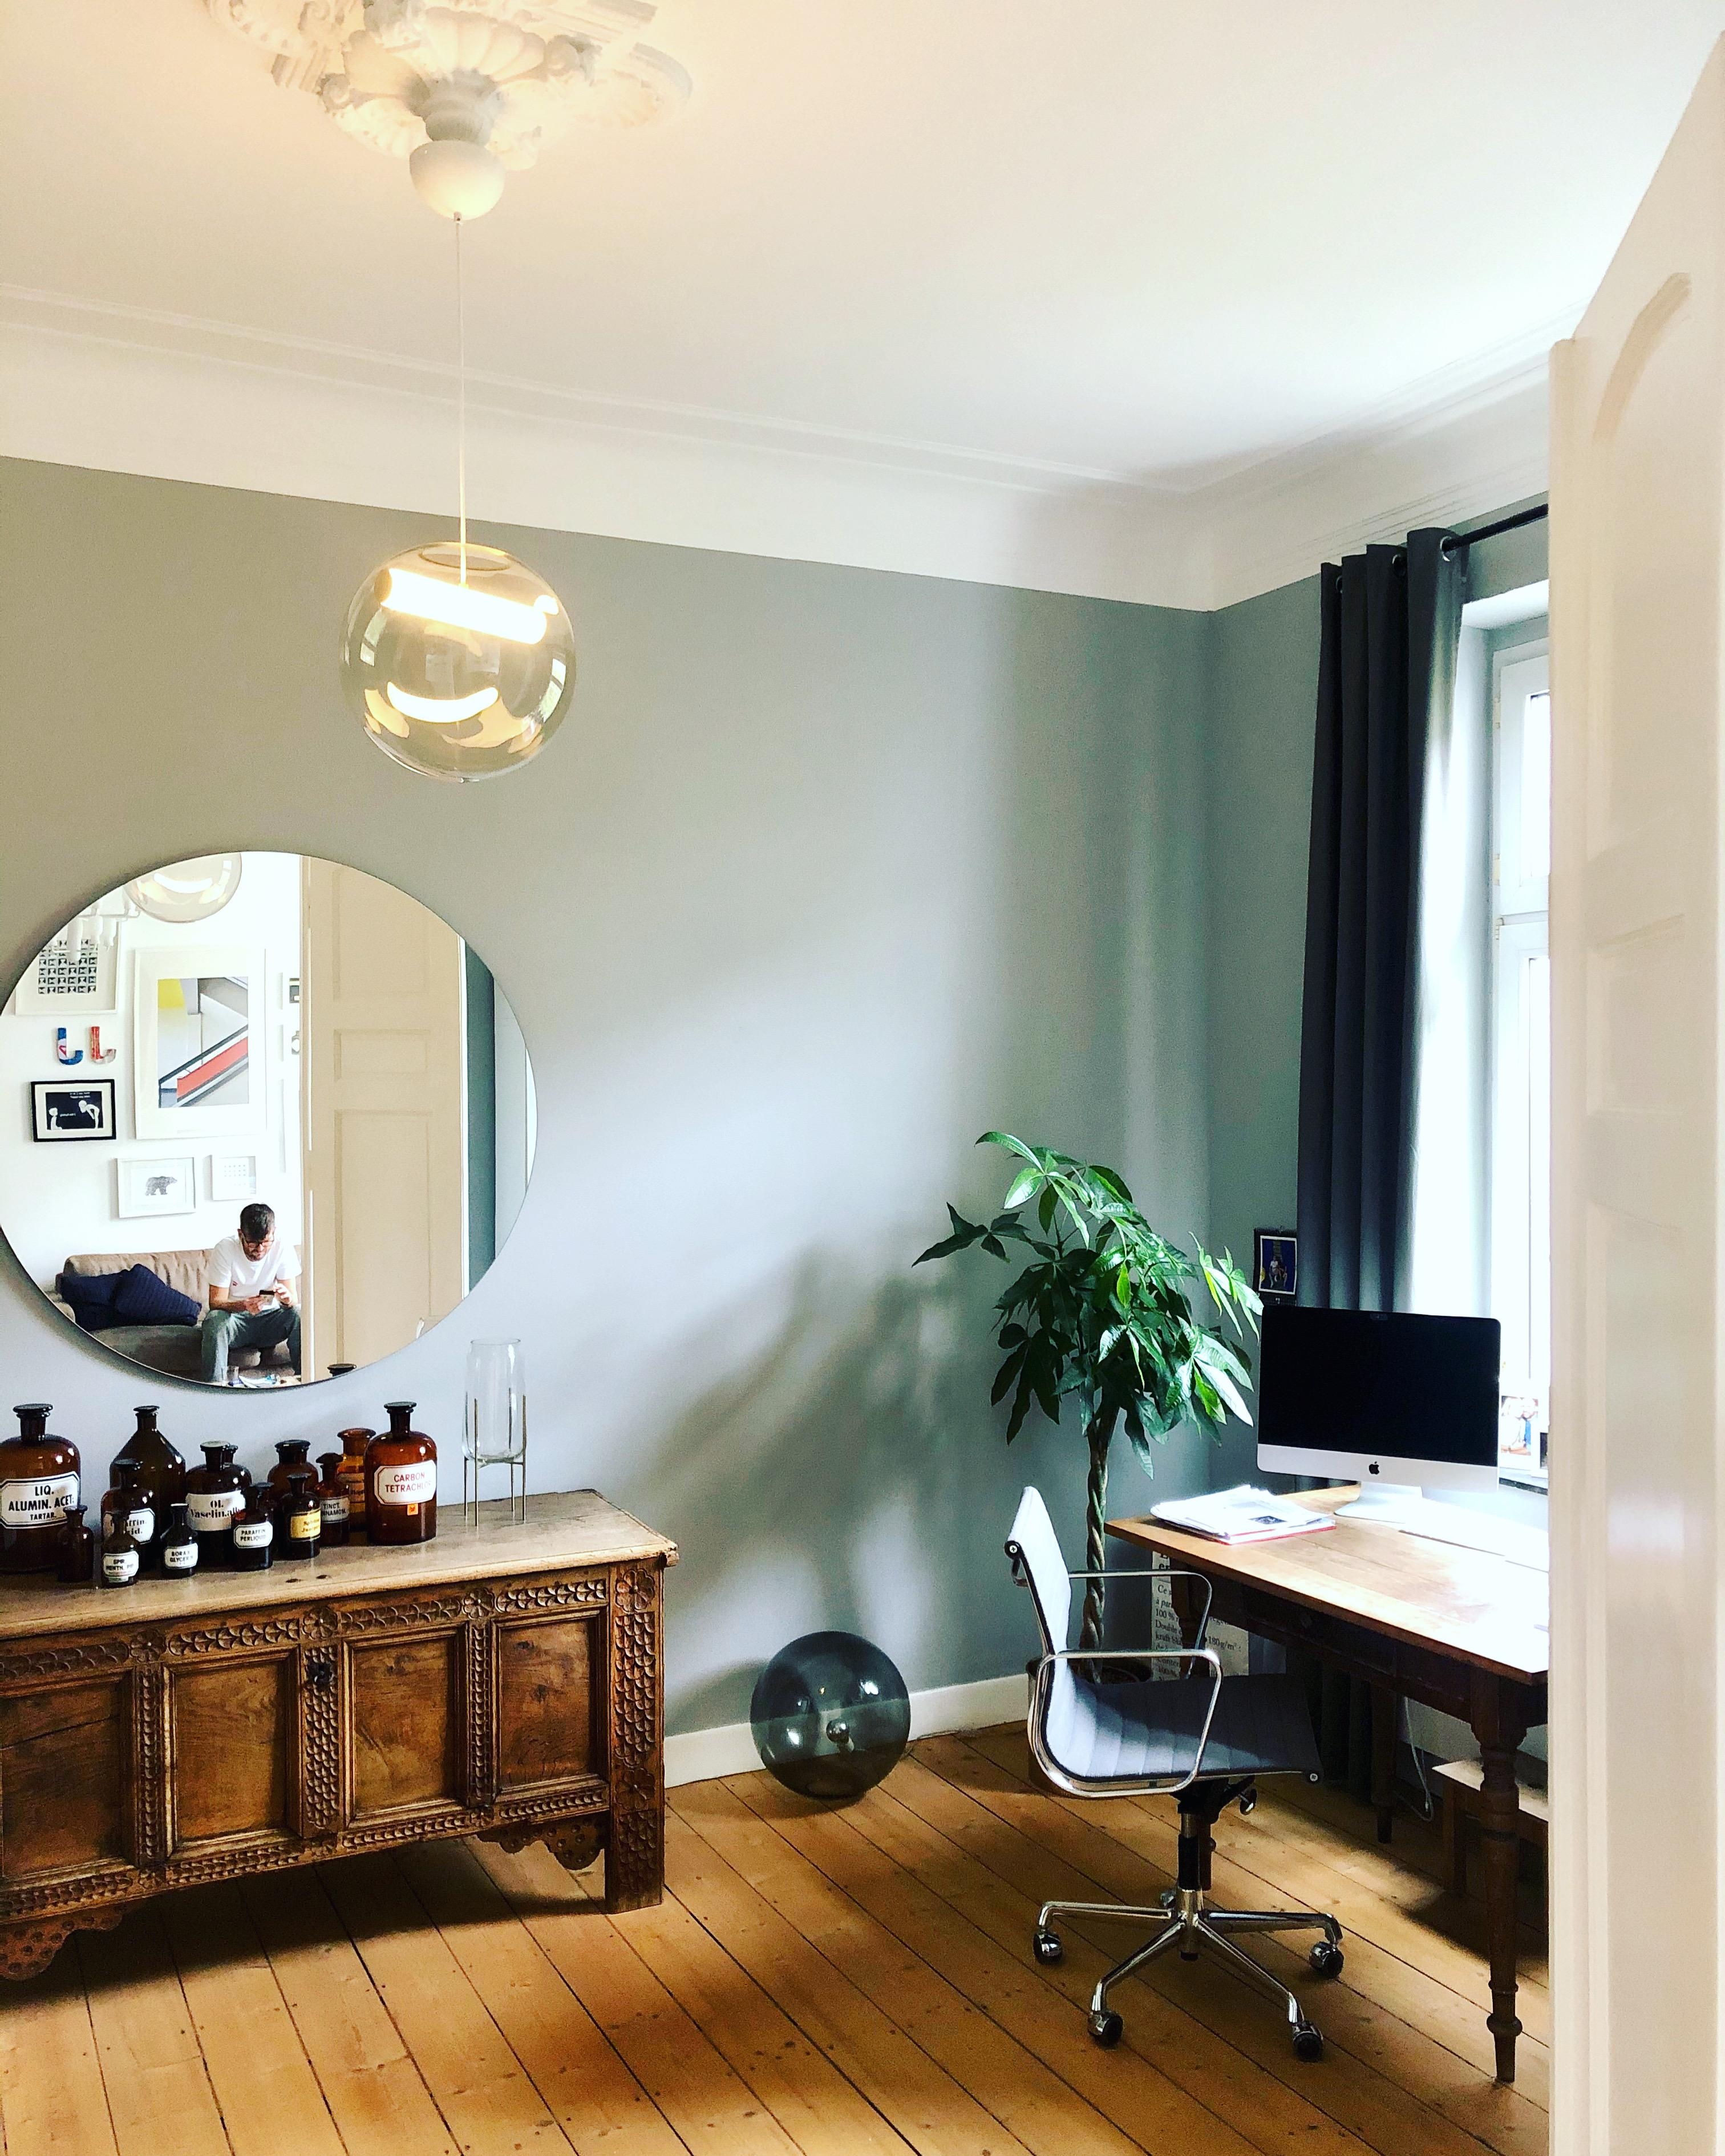 #interior Update aus dem #homeoffice #altbau #altbauliebe #altbauwohnung #wohnzimmer #jugendstil #minimalismus #eames 